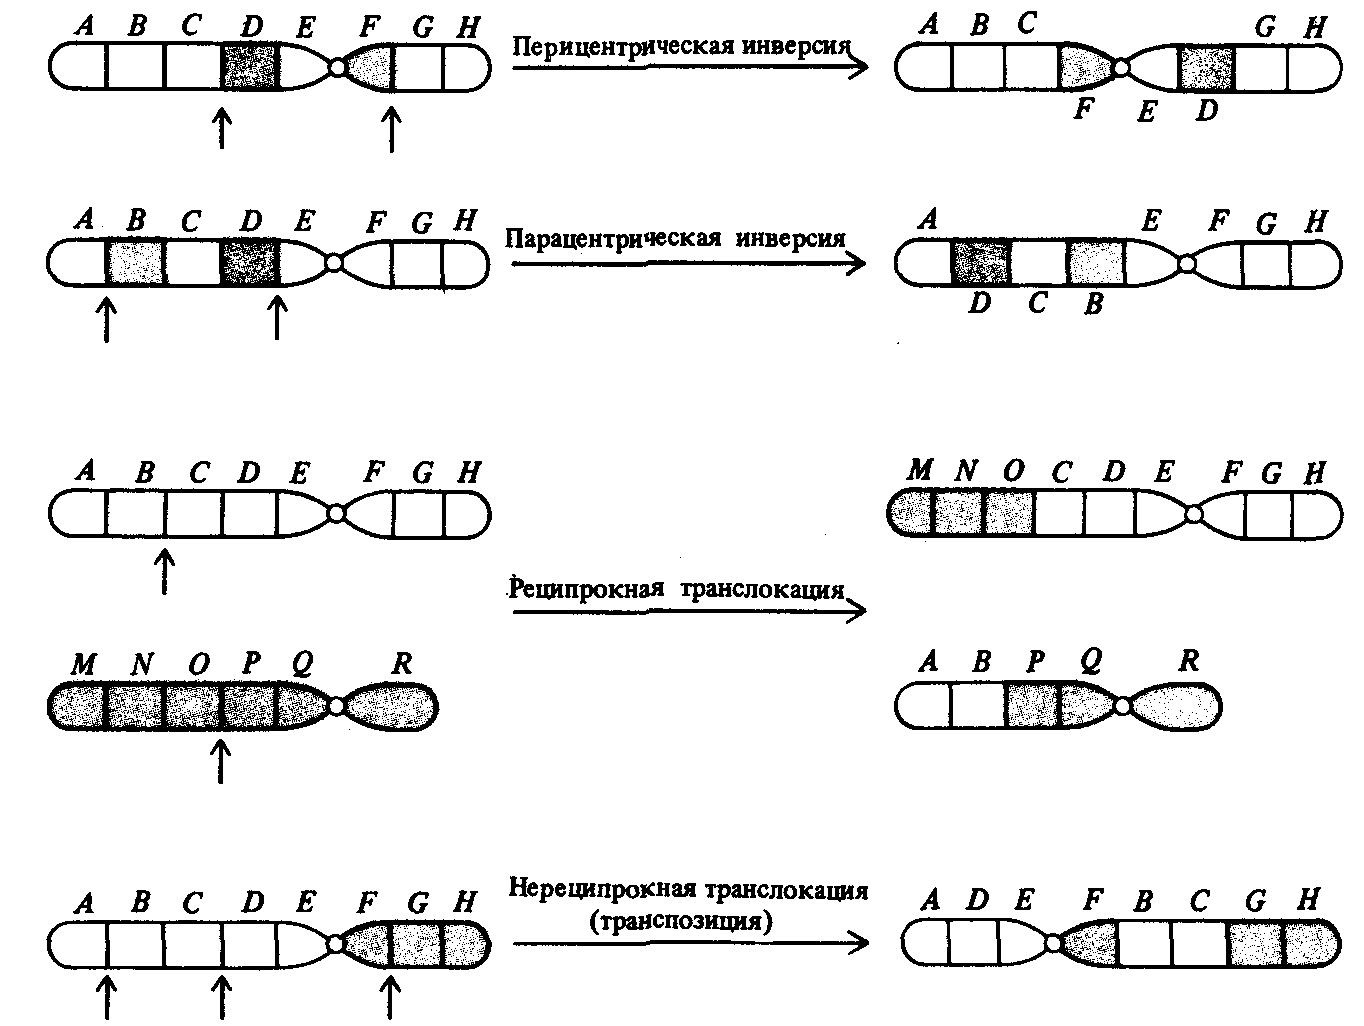 Удвоение участка хромосомы какая мутация. Транслокация хромосом схема. Хромосомные мутации делеция дупликация инверсия транслокация. Хромосомные мутации схема. Транслокация хромосом мутация.